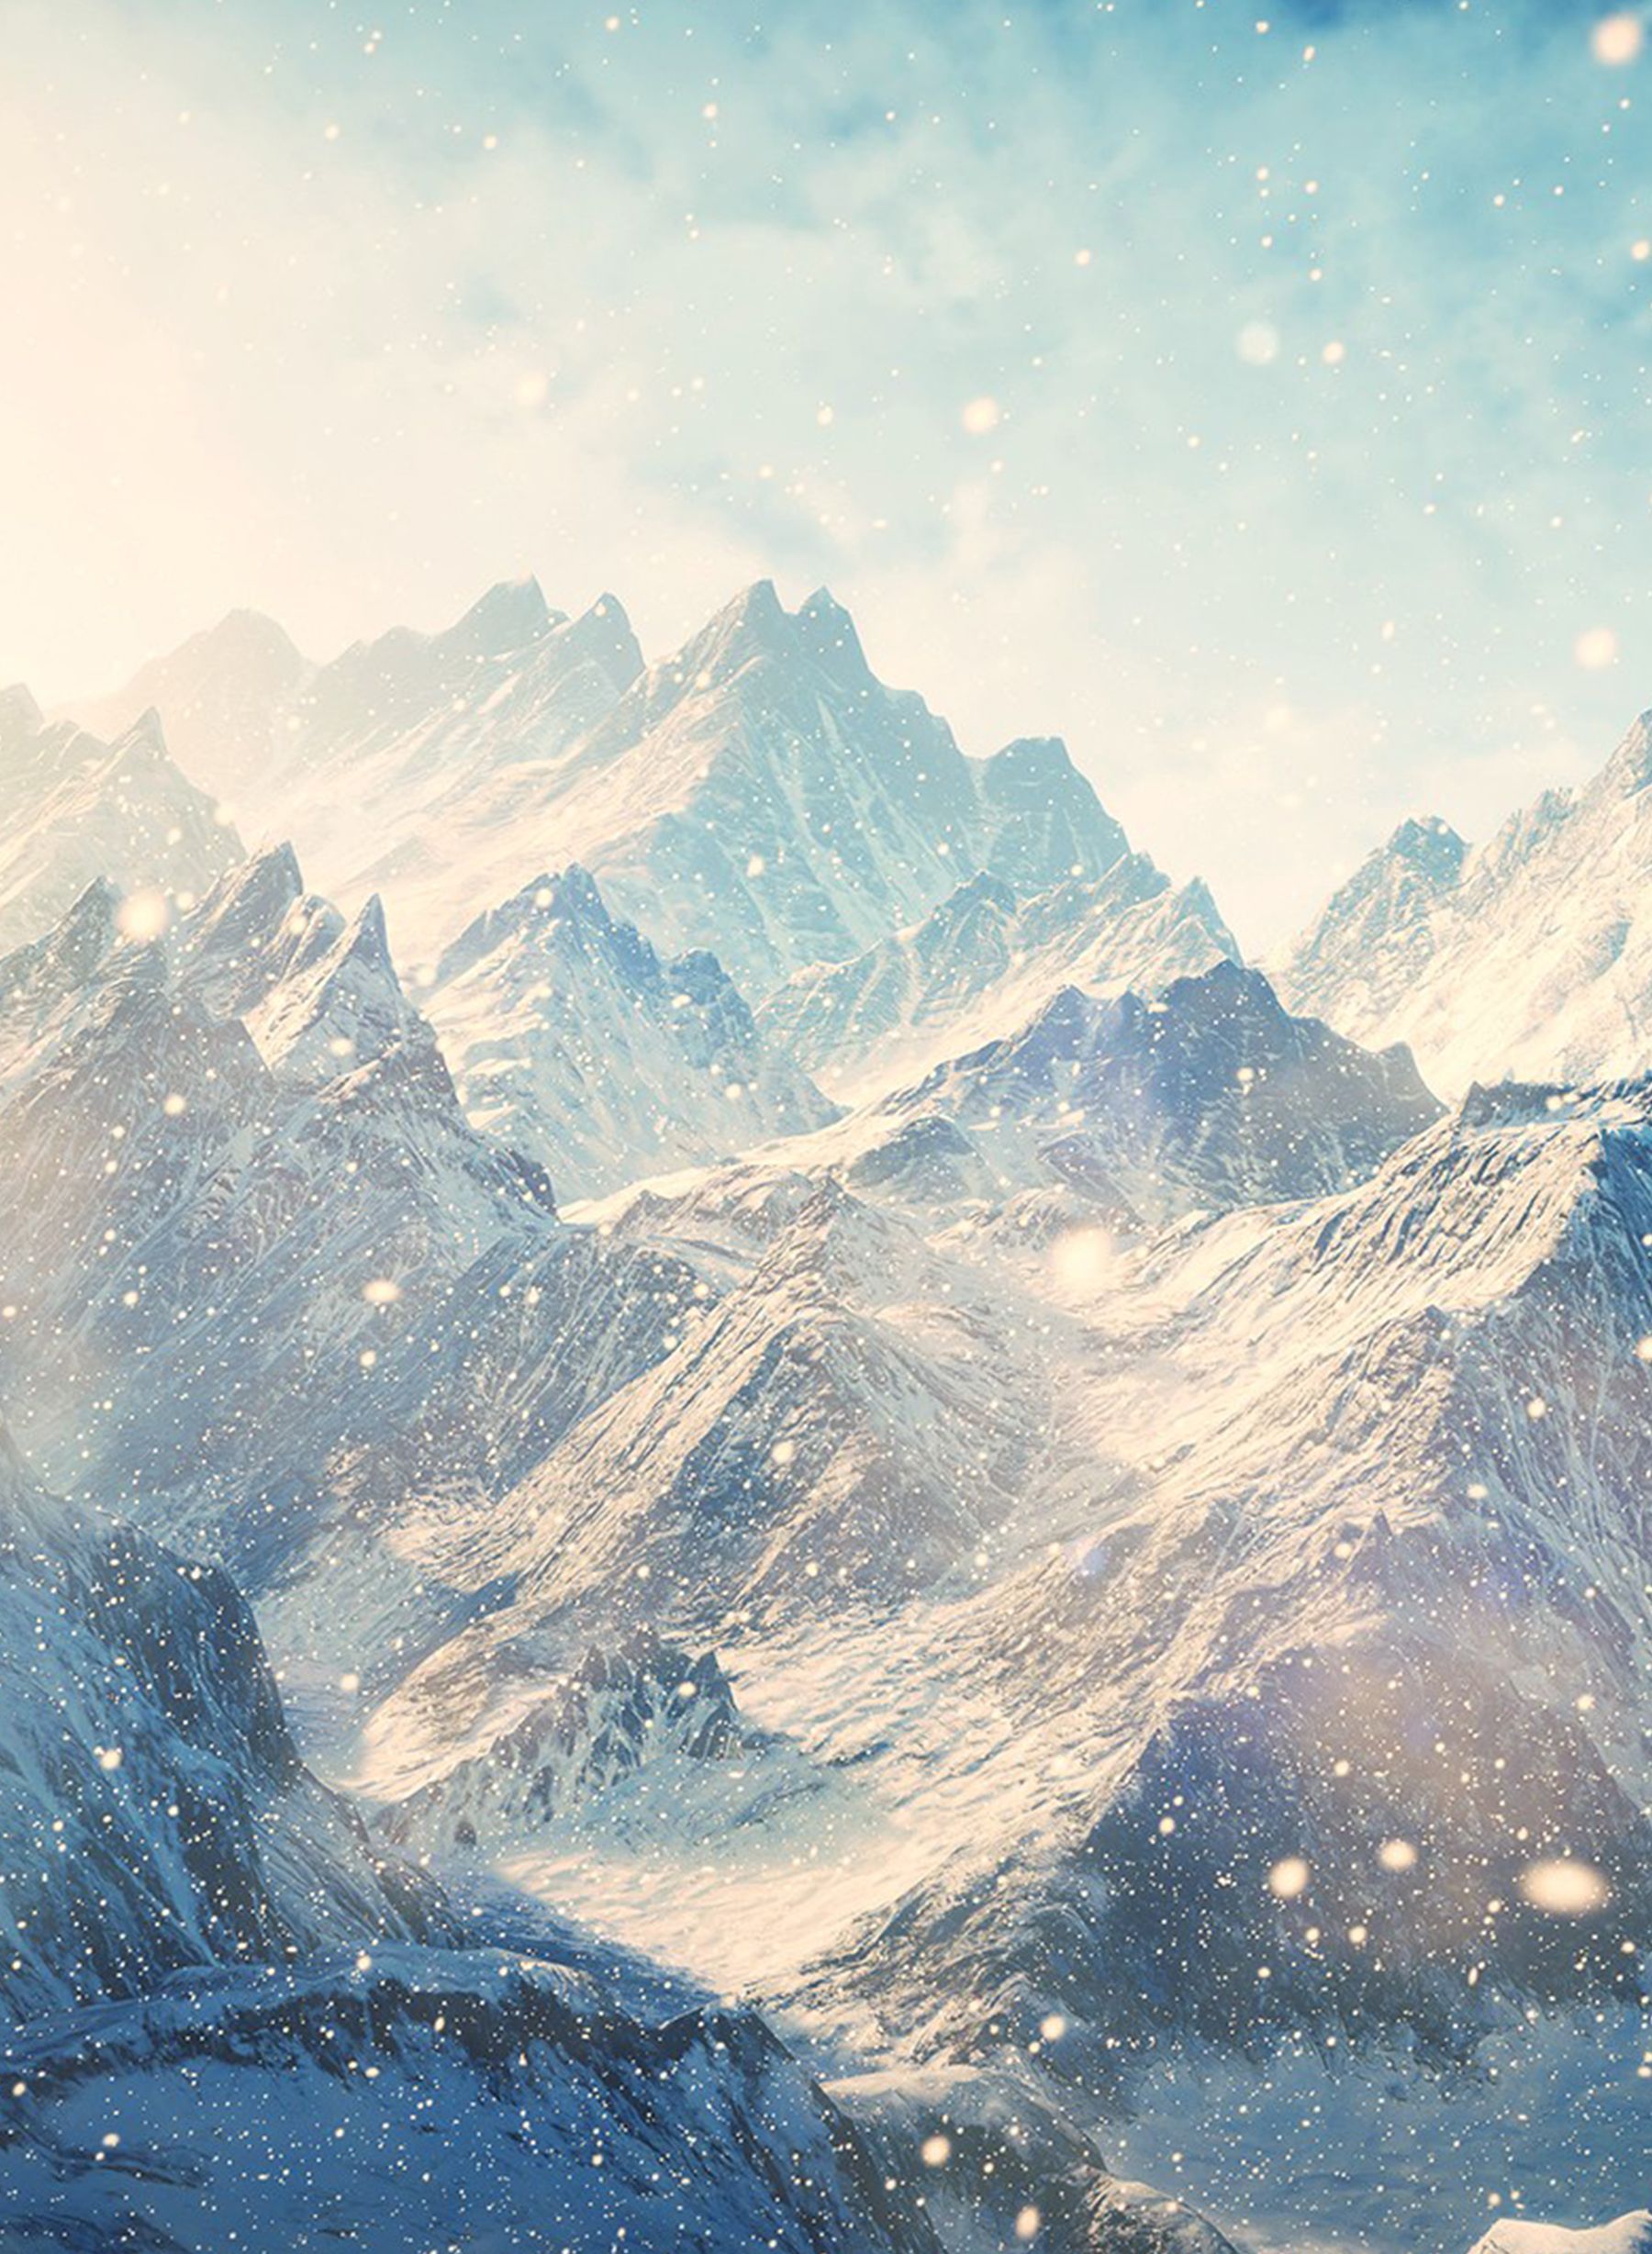 Snow. White. Mountain. #wallpaper #mobile #vertical. iPhone 5s wallpaper, Mountain wallpaper, Winter wallpaper